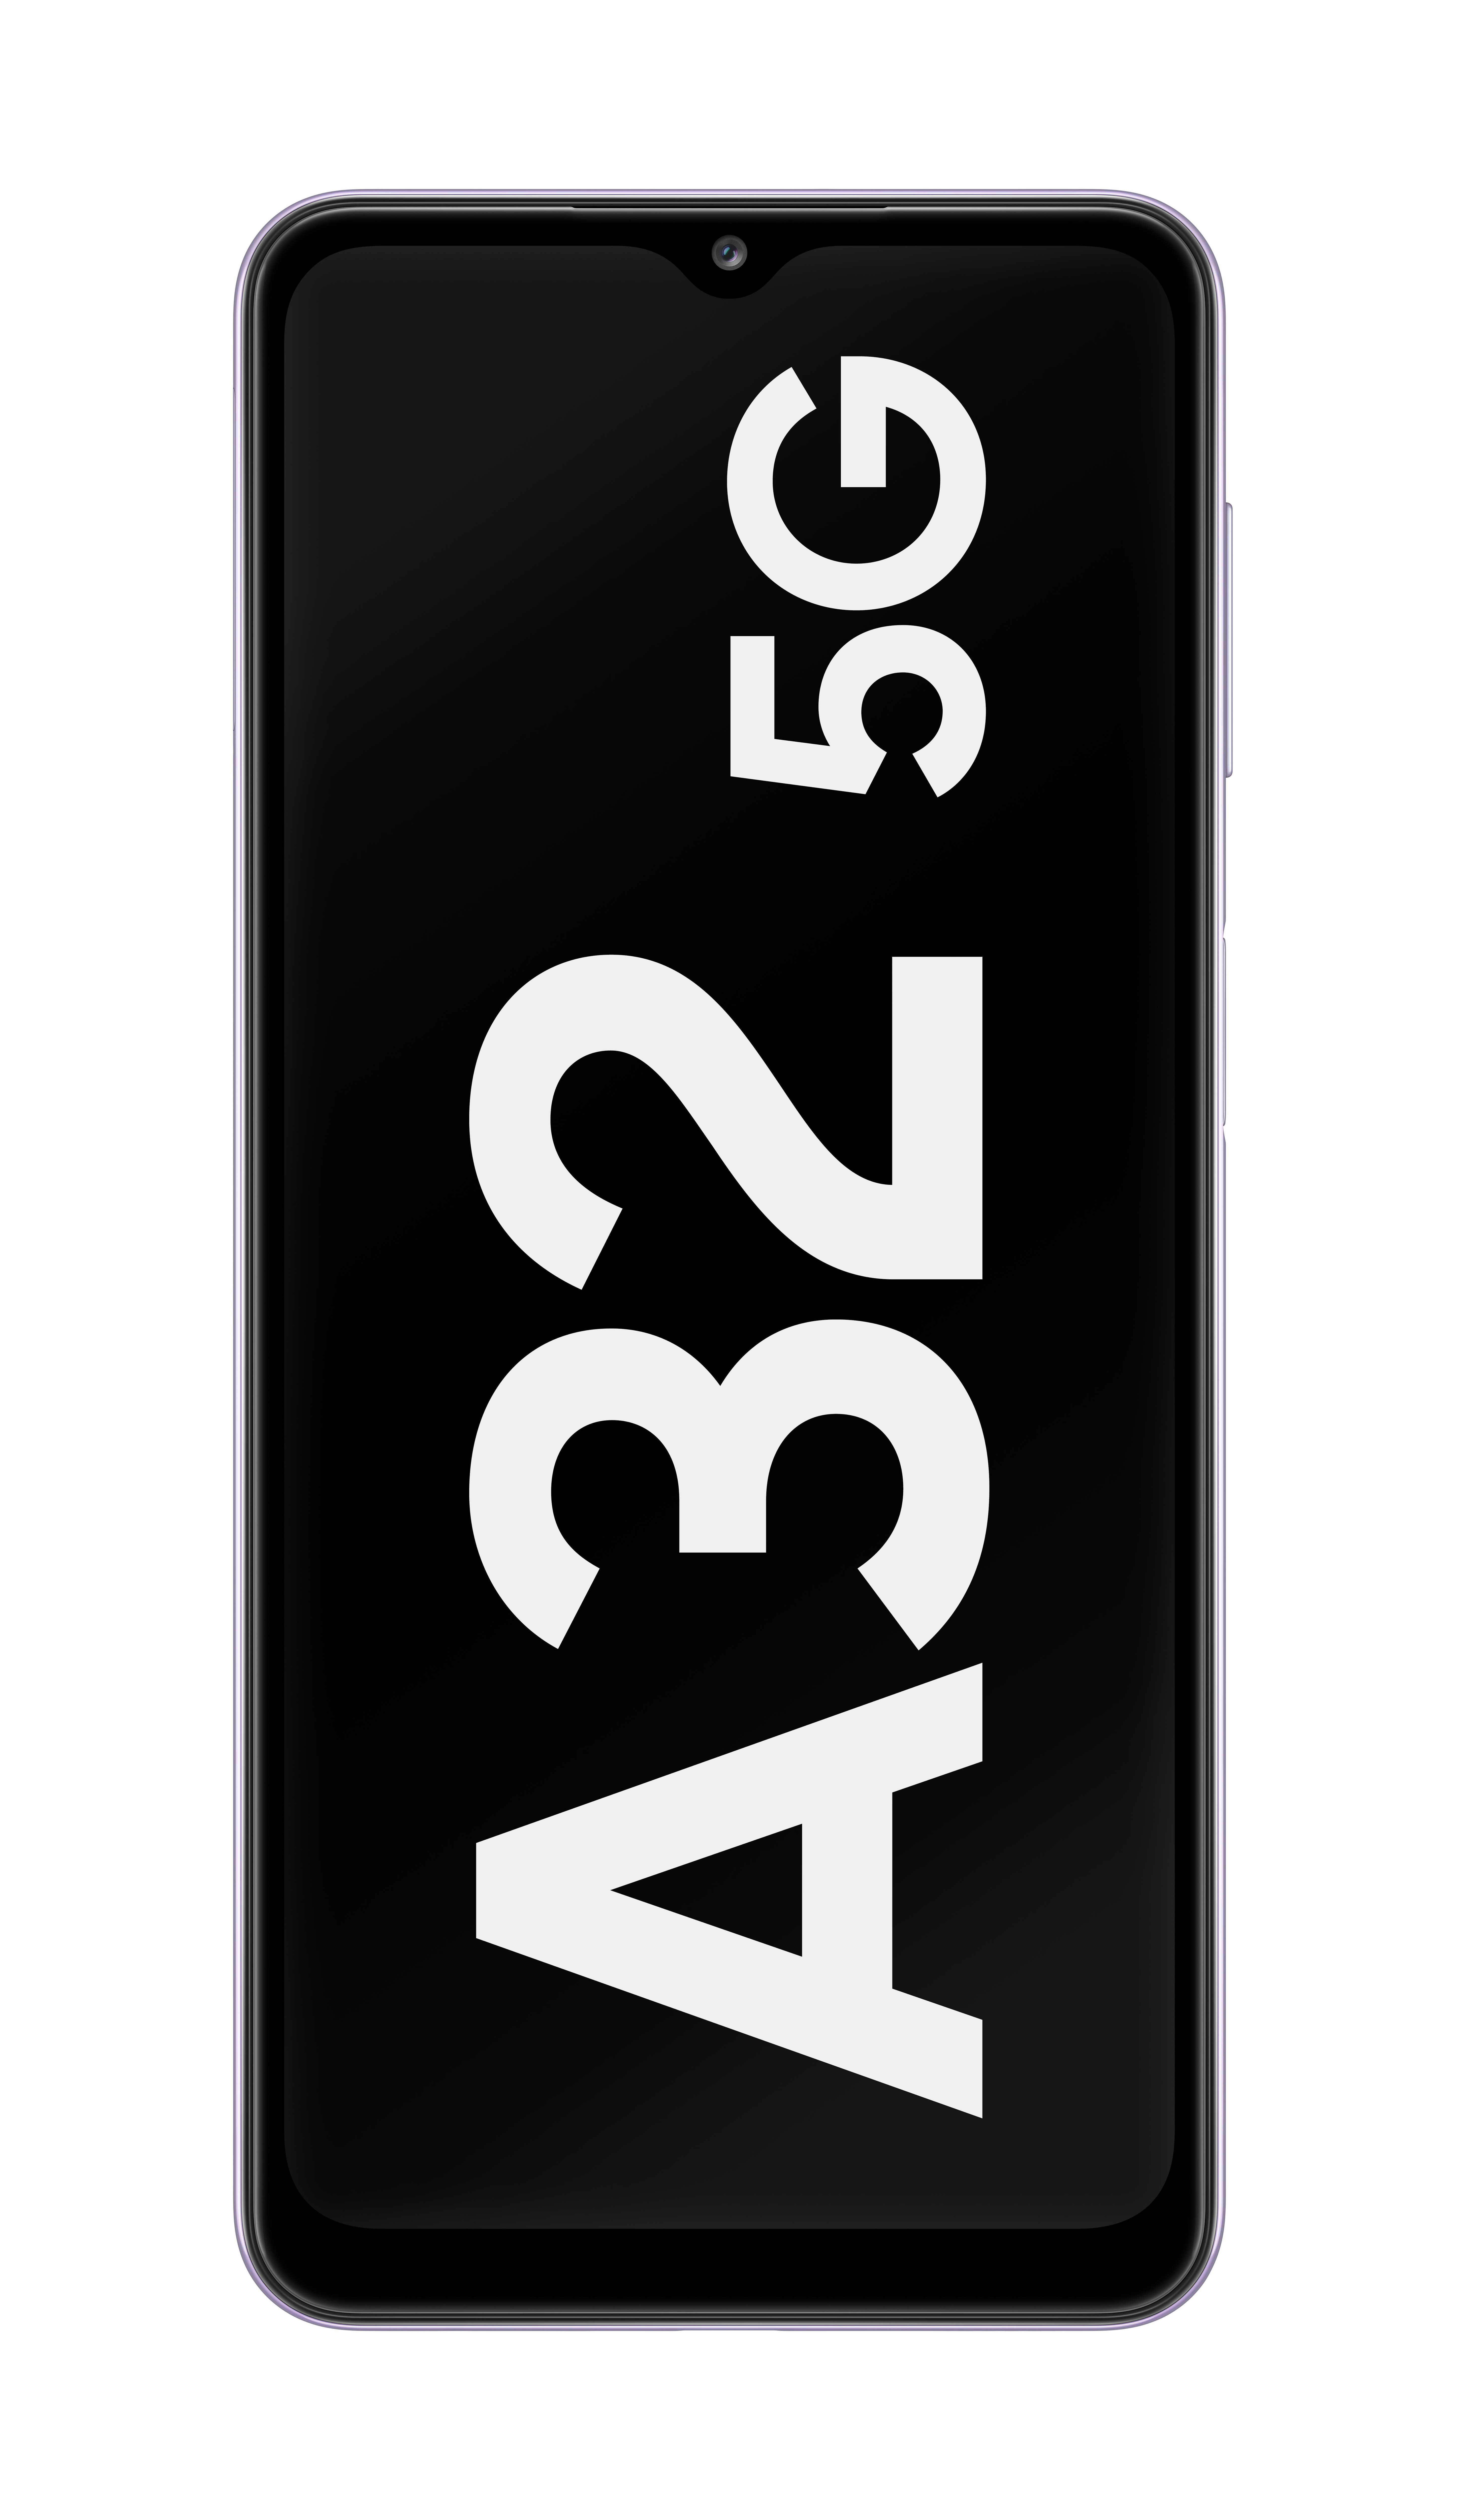 64 SAMSUNG Dual 5G A32 GB Violett SIM Galaxy